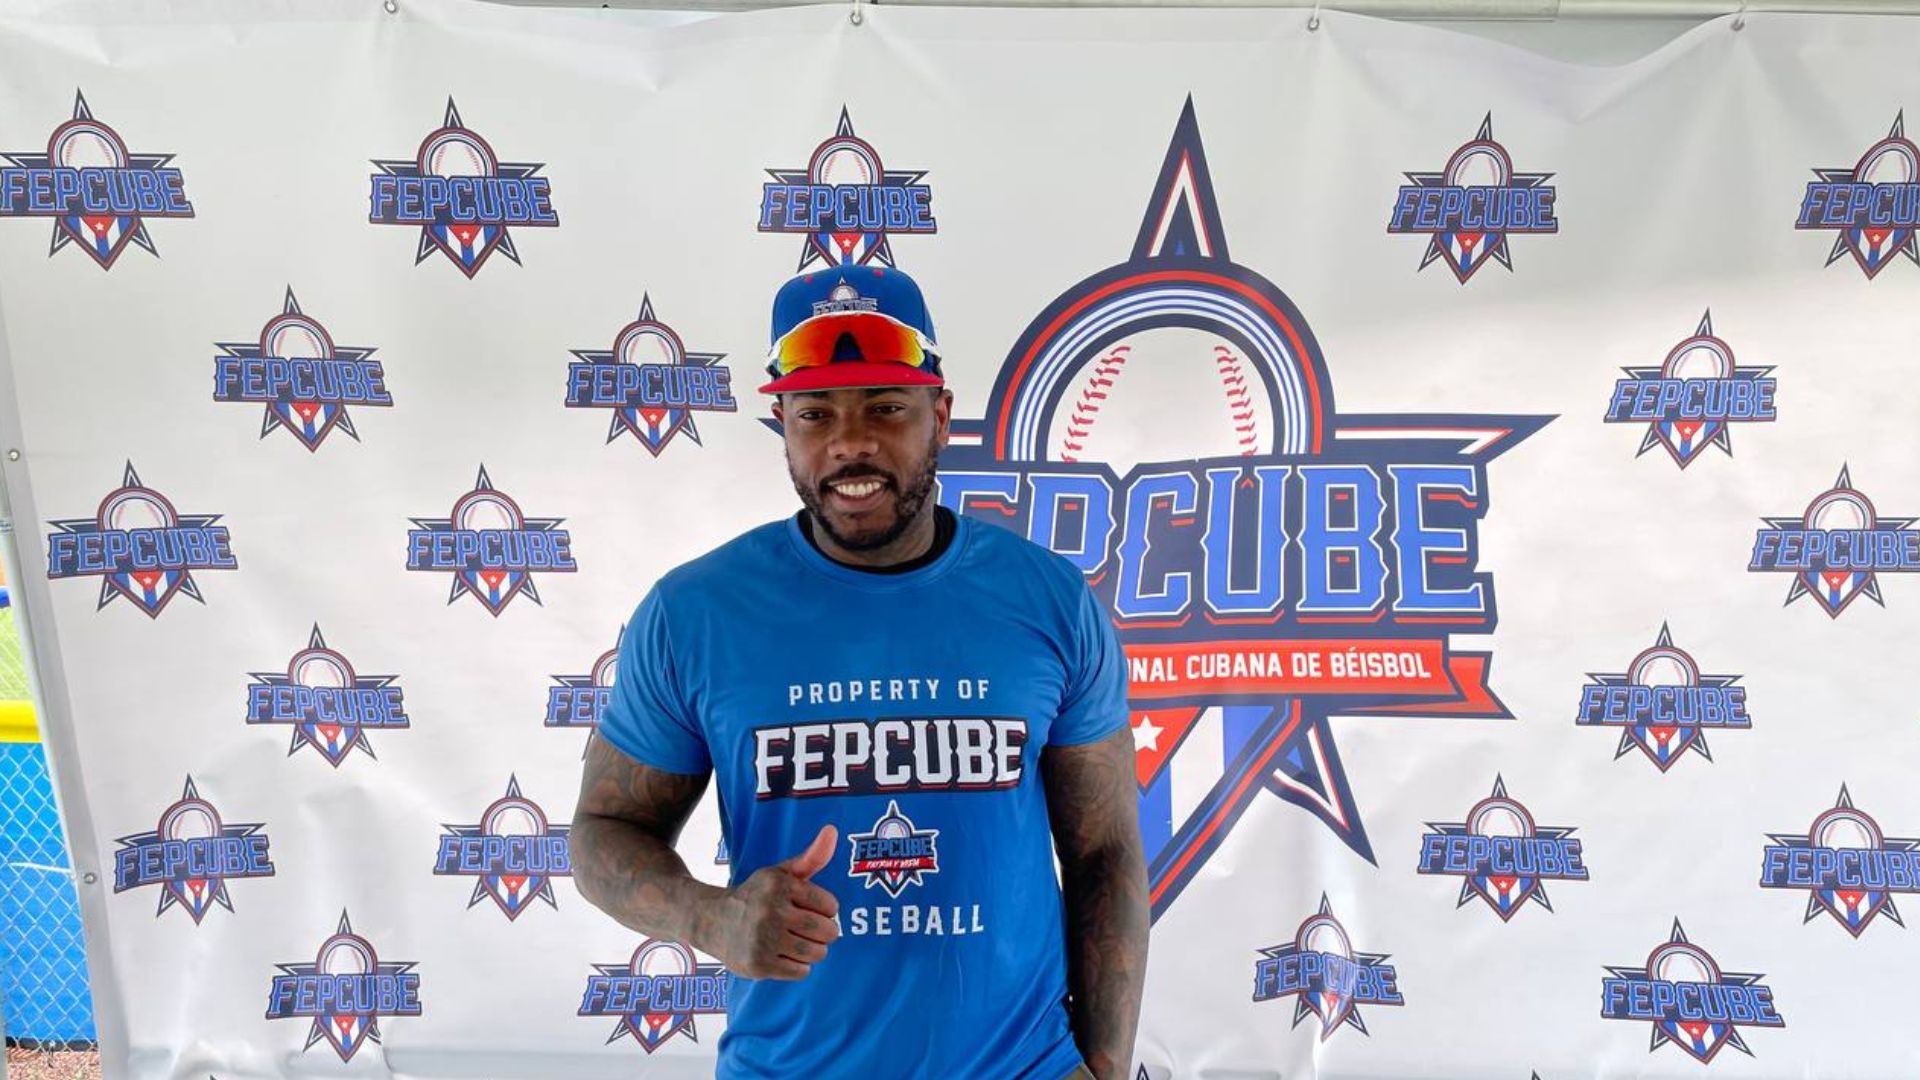 Uno de las figuras más relevante del equipo de la  Federación Profesional Cubana de Béisbol (FEPCUBE) es sin lugar a dudas el lanzador Aroldis Chapman